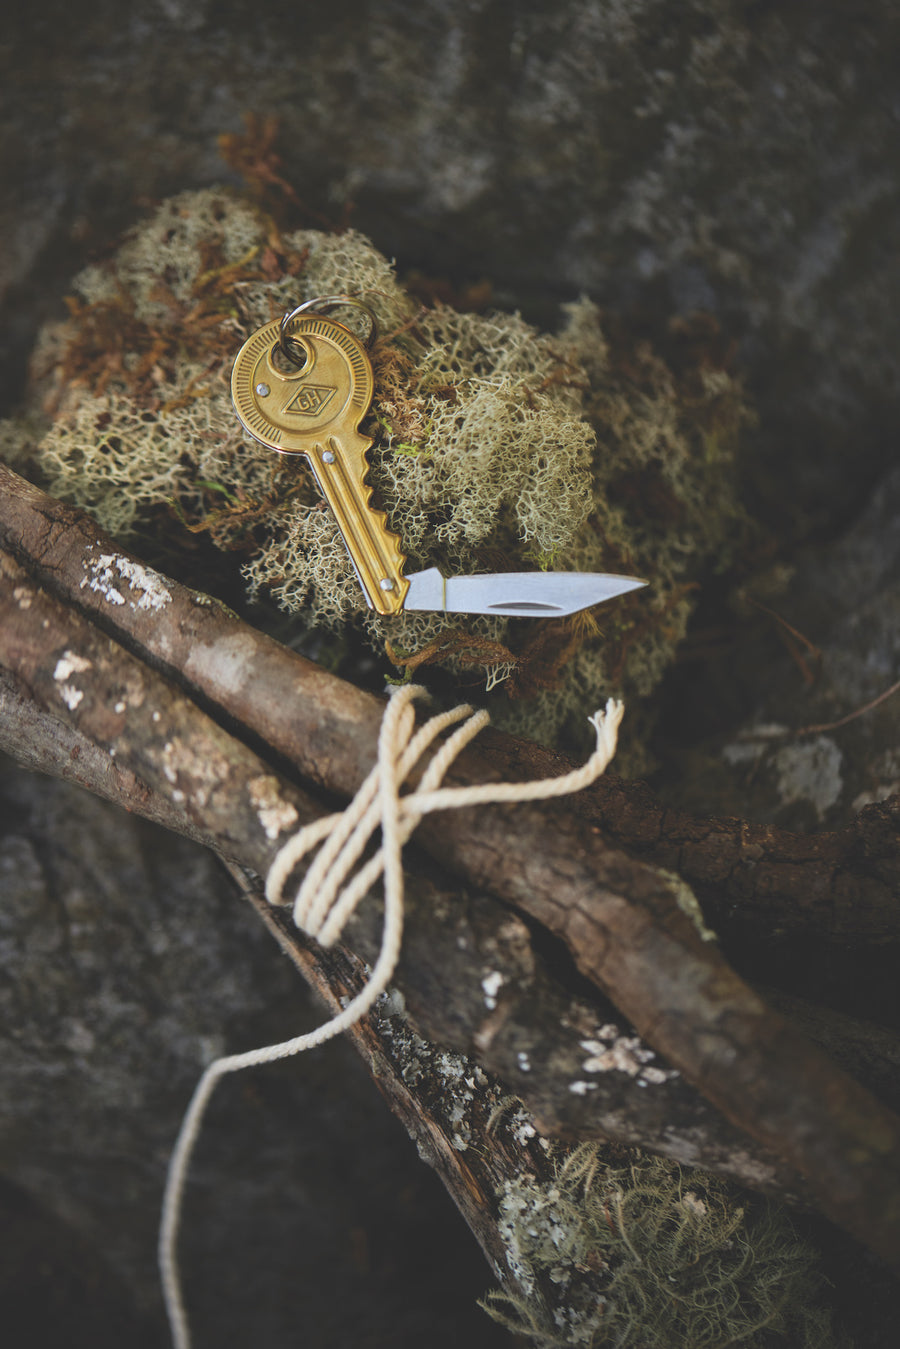 Key Pocket Knife resting on moss next to twigs bound by twine